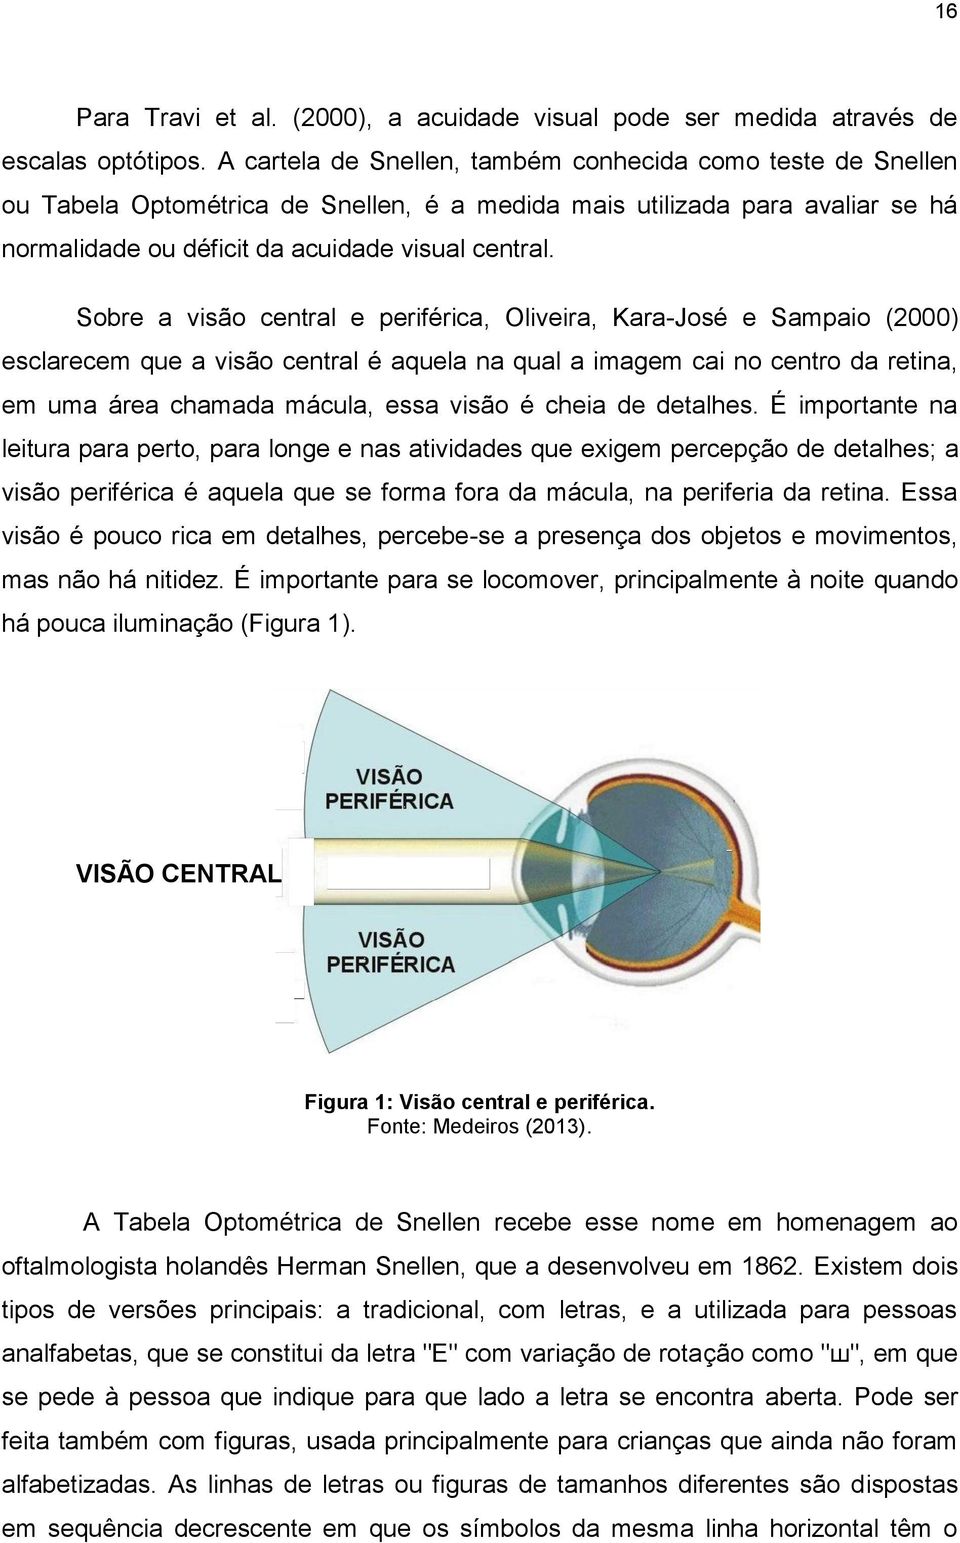 Sobre a visão central e periférica, Oliveira, Kara-José e Sampaio (2000) esclarecem que a visão central é aquela na qual a imagem cai no centro da retina, em uma área chamada mácula, essa visão é